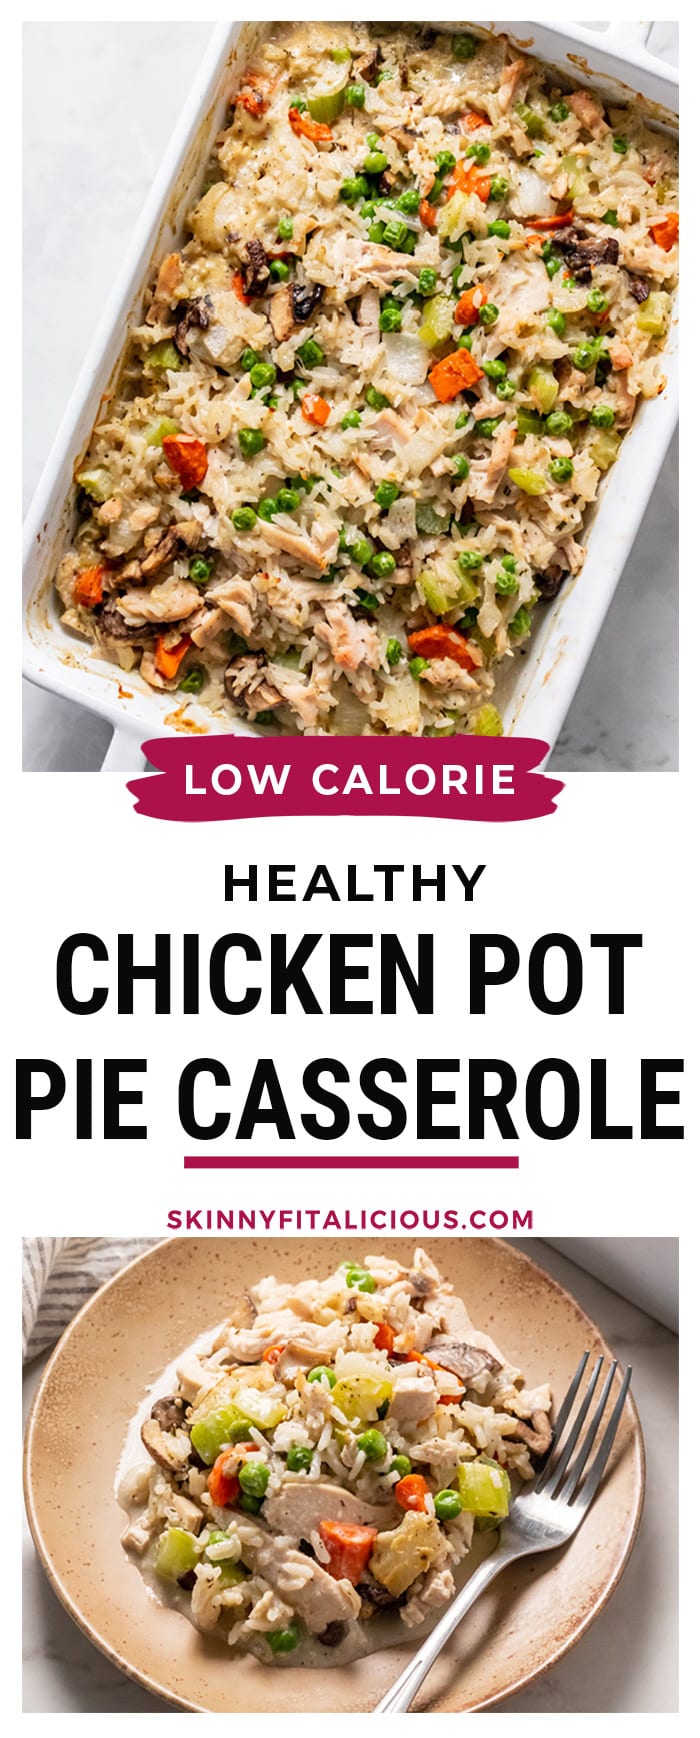 casserole dish with chicken pot pie ingredients